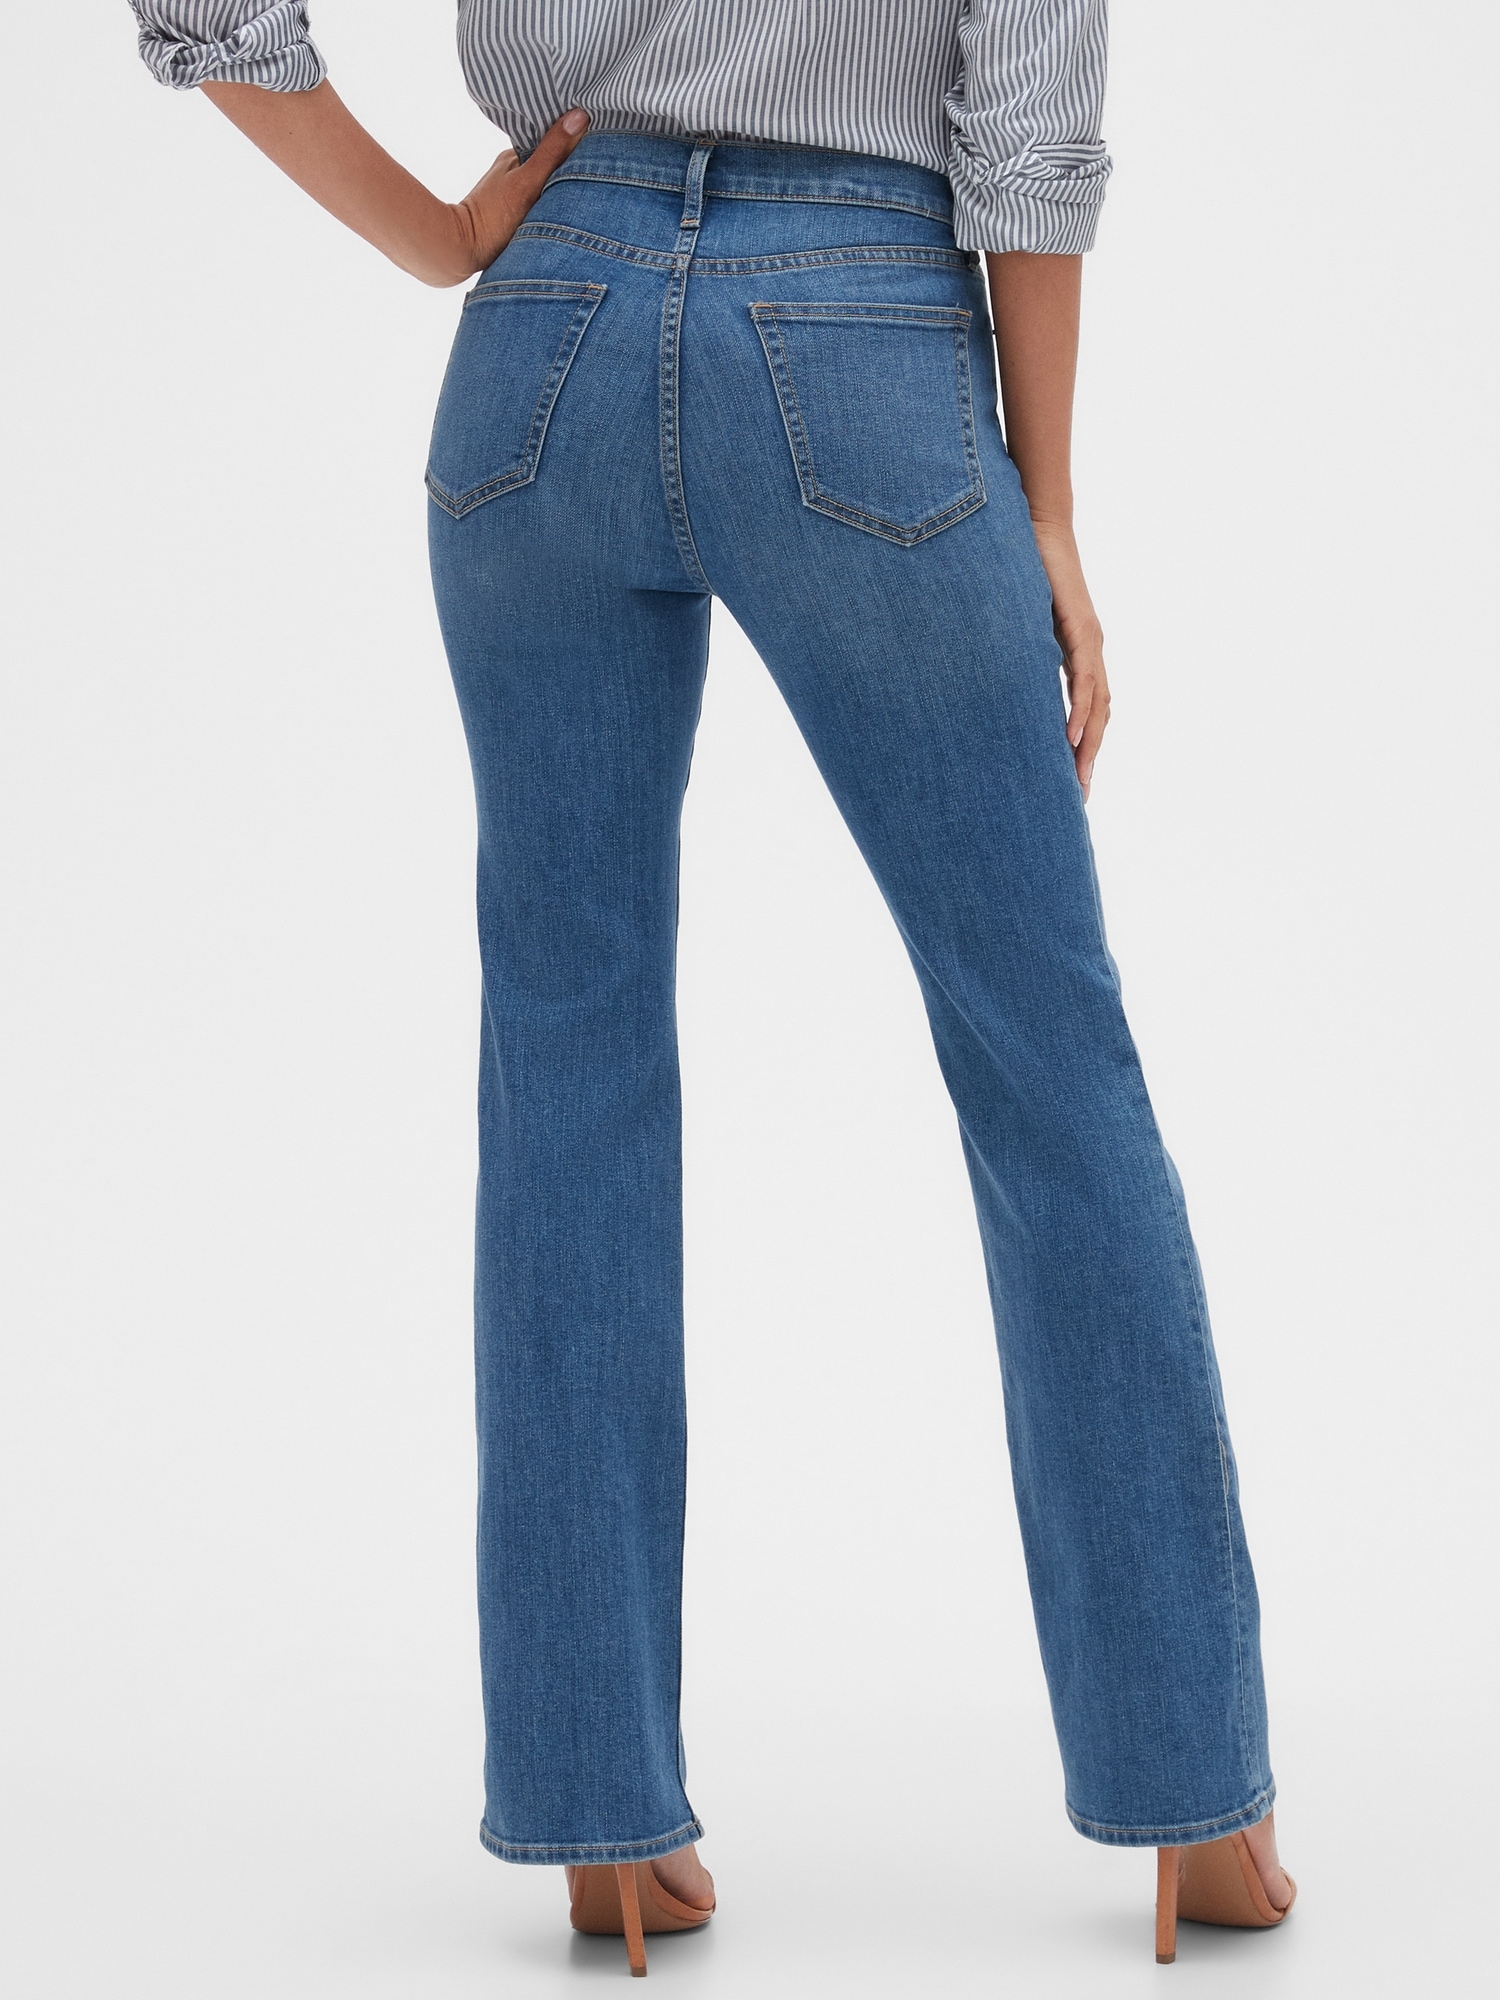 Apotheke unbezahlt mich selber gap bootcut jeans womens Metropolitan